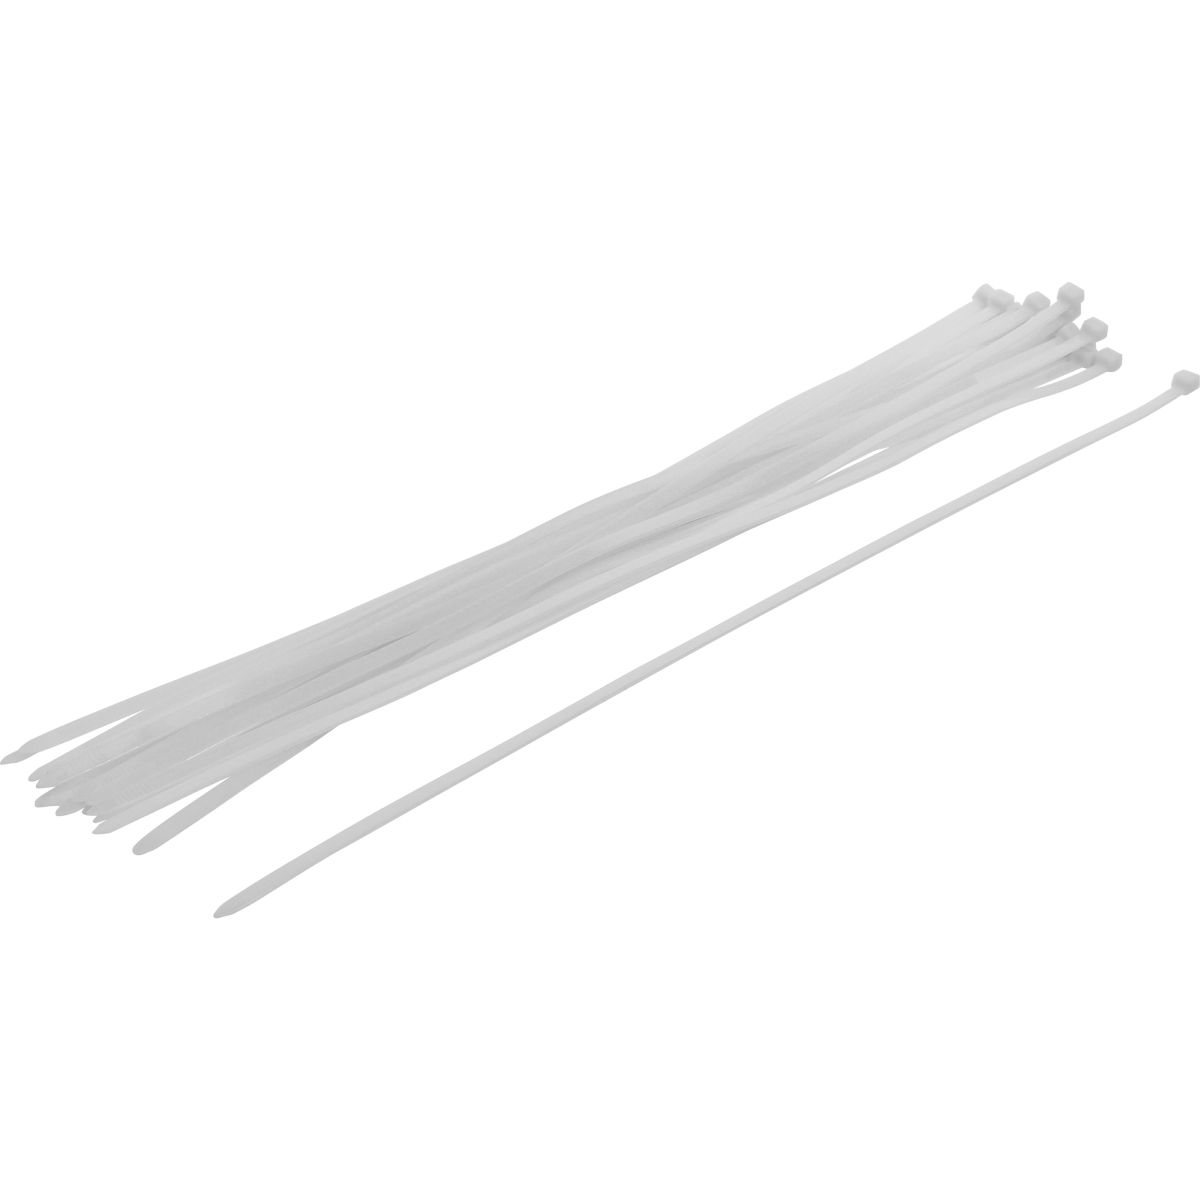 Cable Tie Assortment | white | 8.0 x 600 mm | 20 pcs.